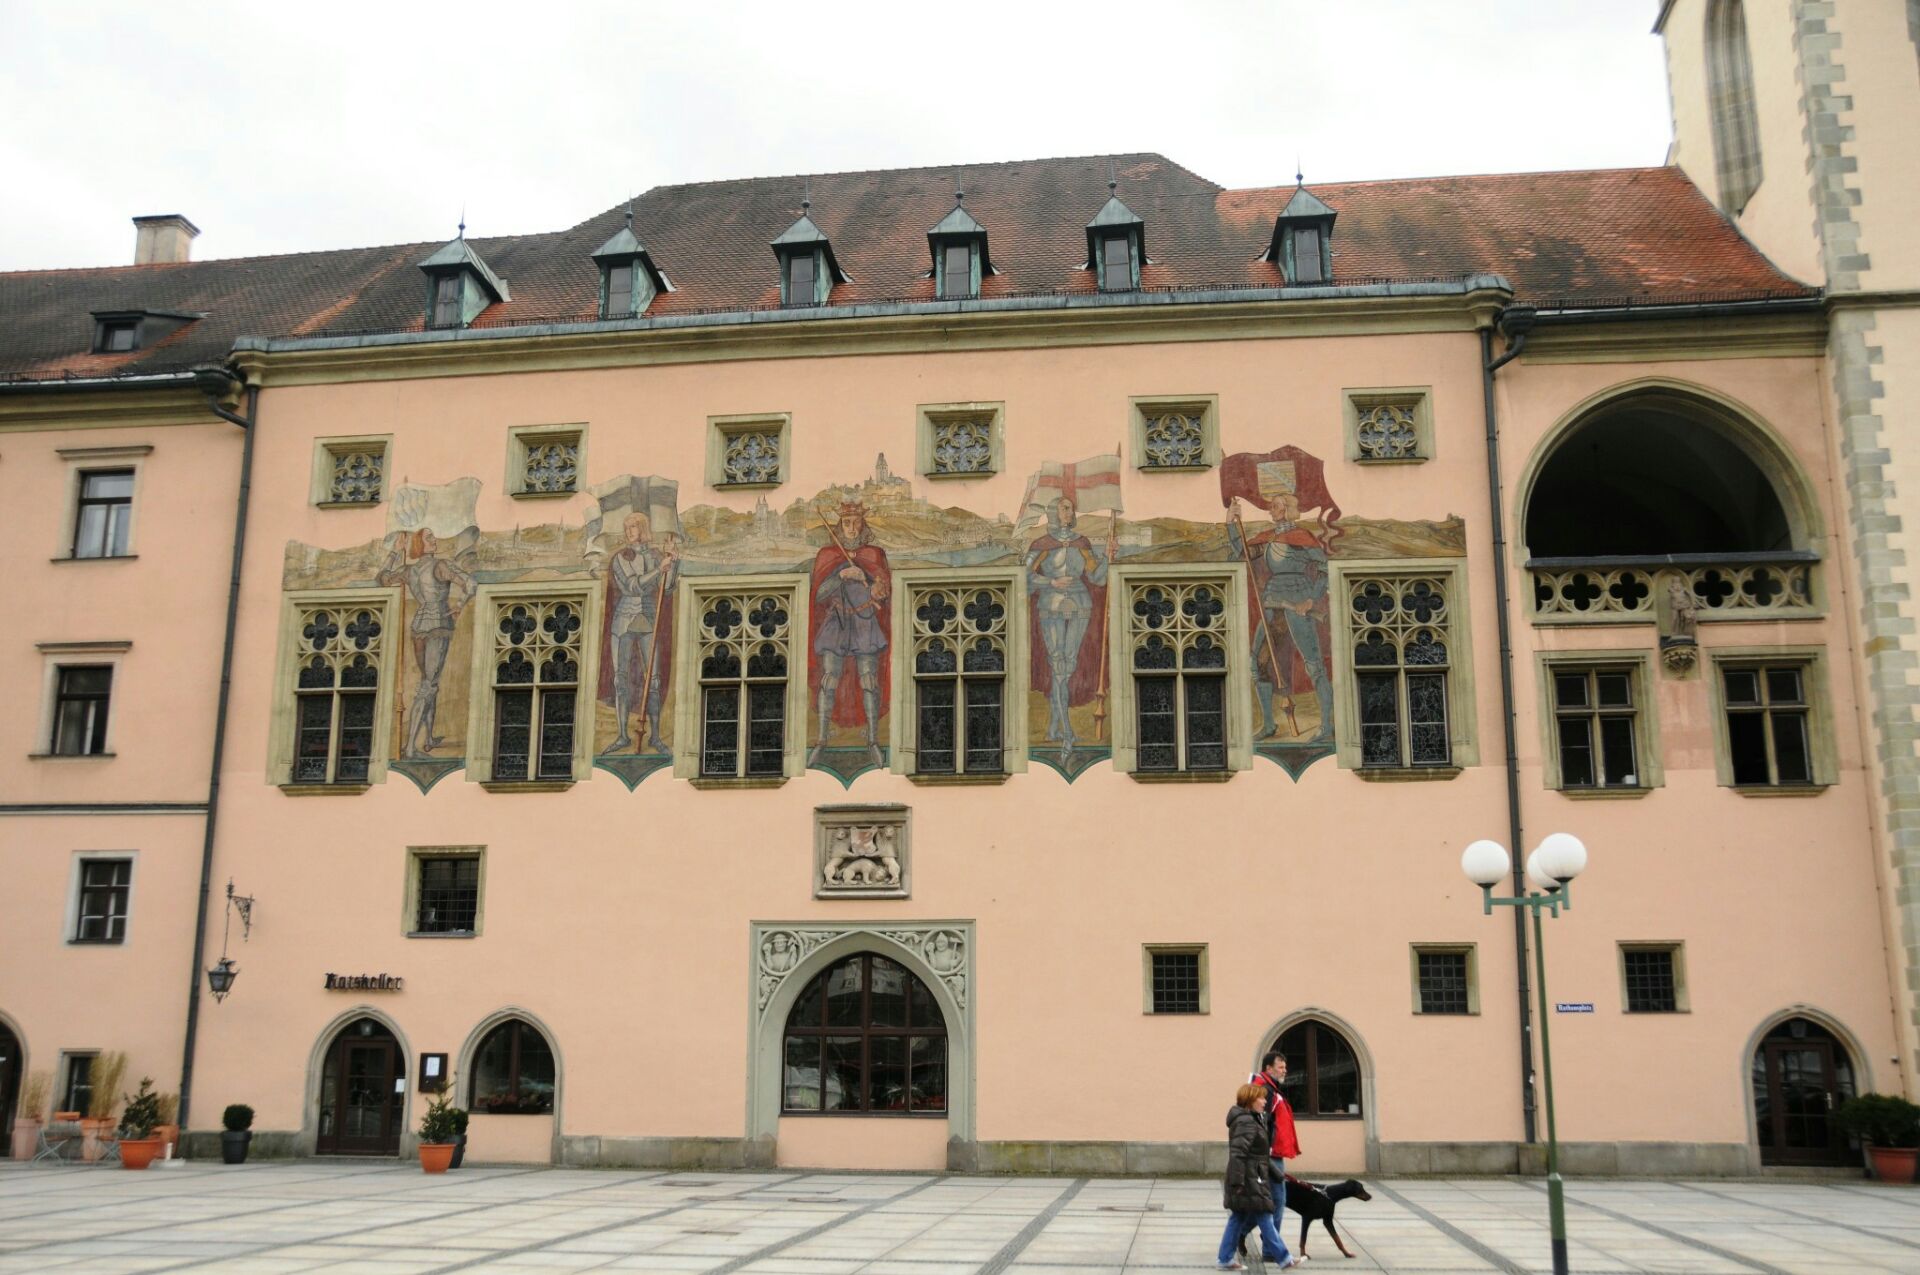 林道老市政厅是一座有着五百多年历史的老建筑，有着典型的德国和瑞士交界地区的建筑风格。墙上有许多古老而